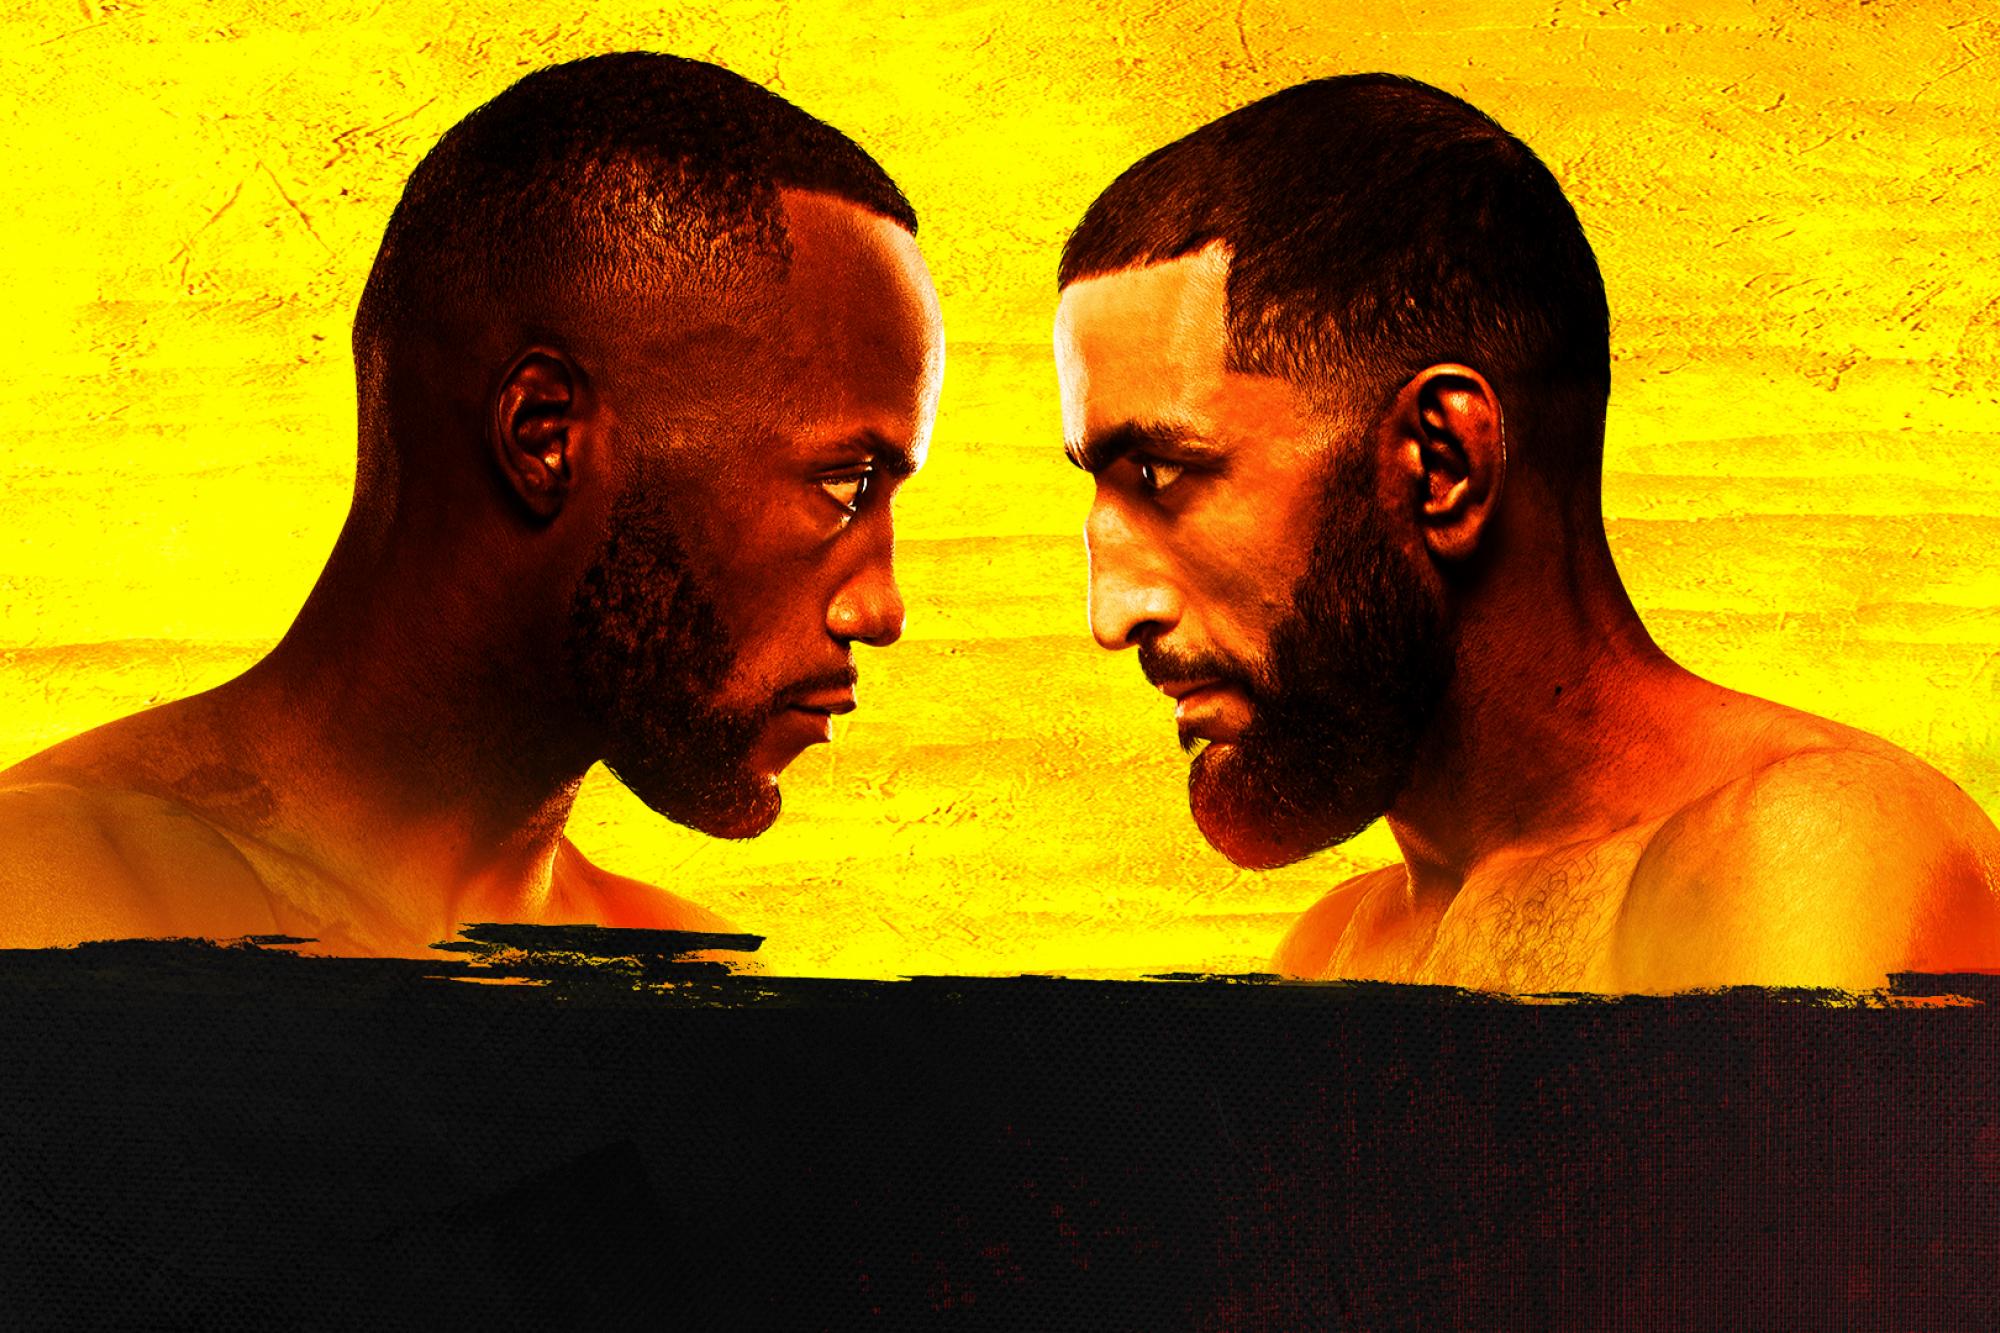 UFC on ESPN+ 45 - Las Vegas - Poster et affiche